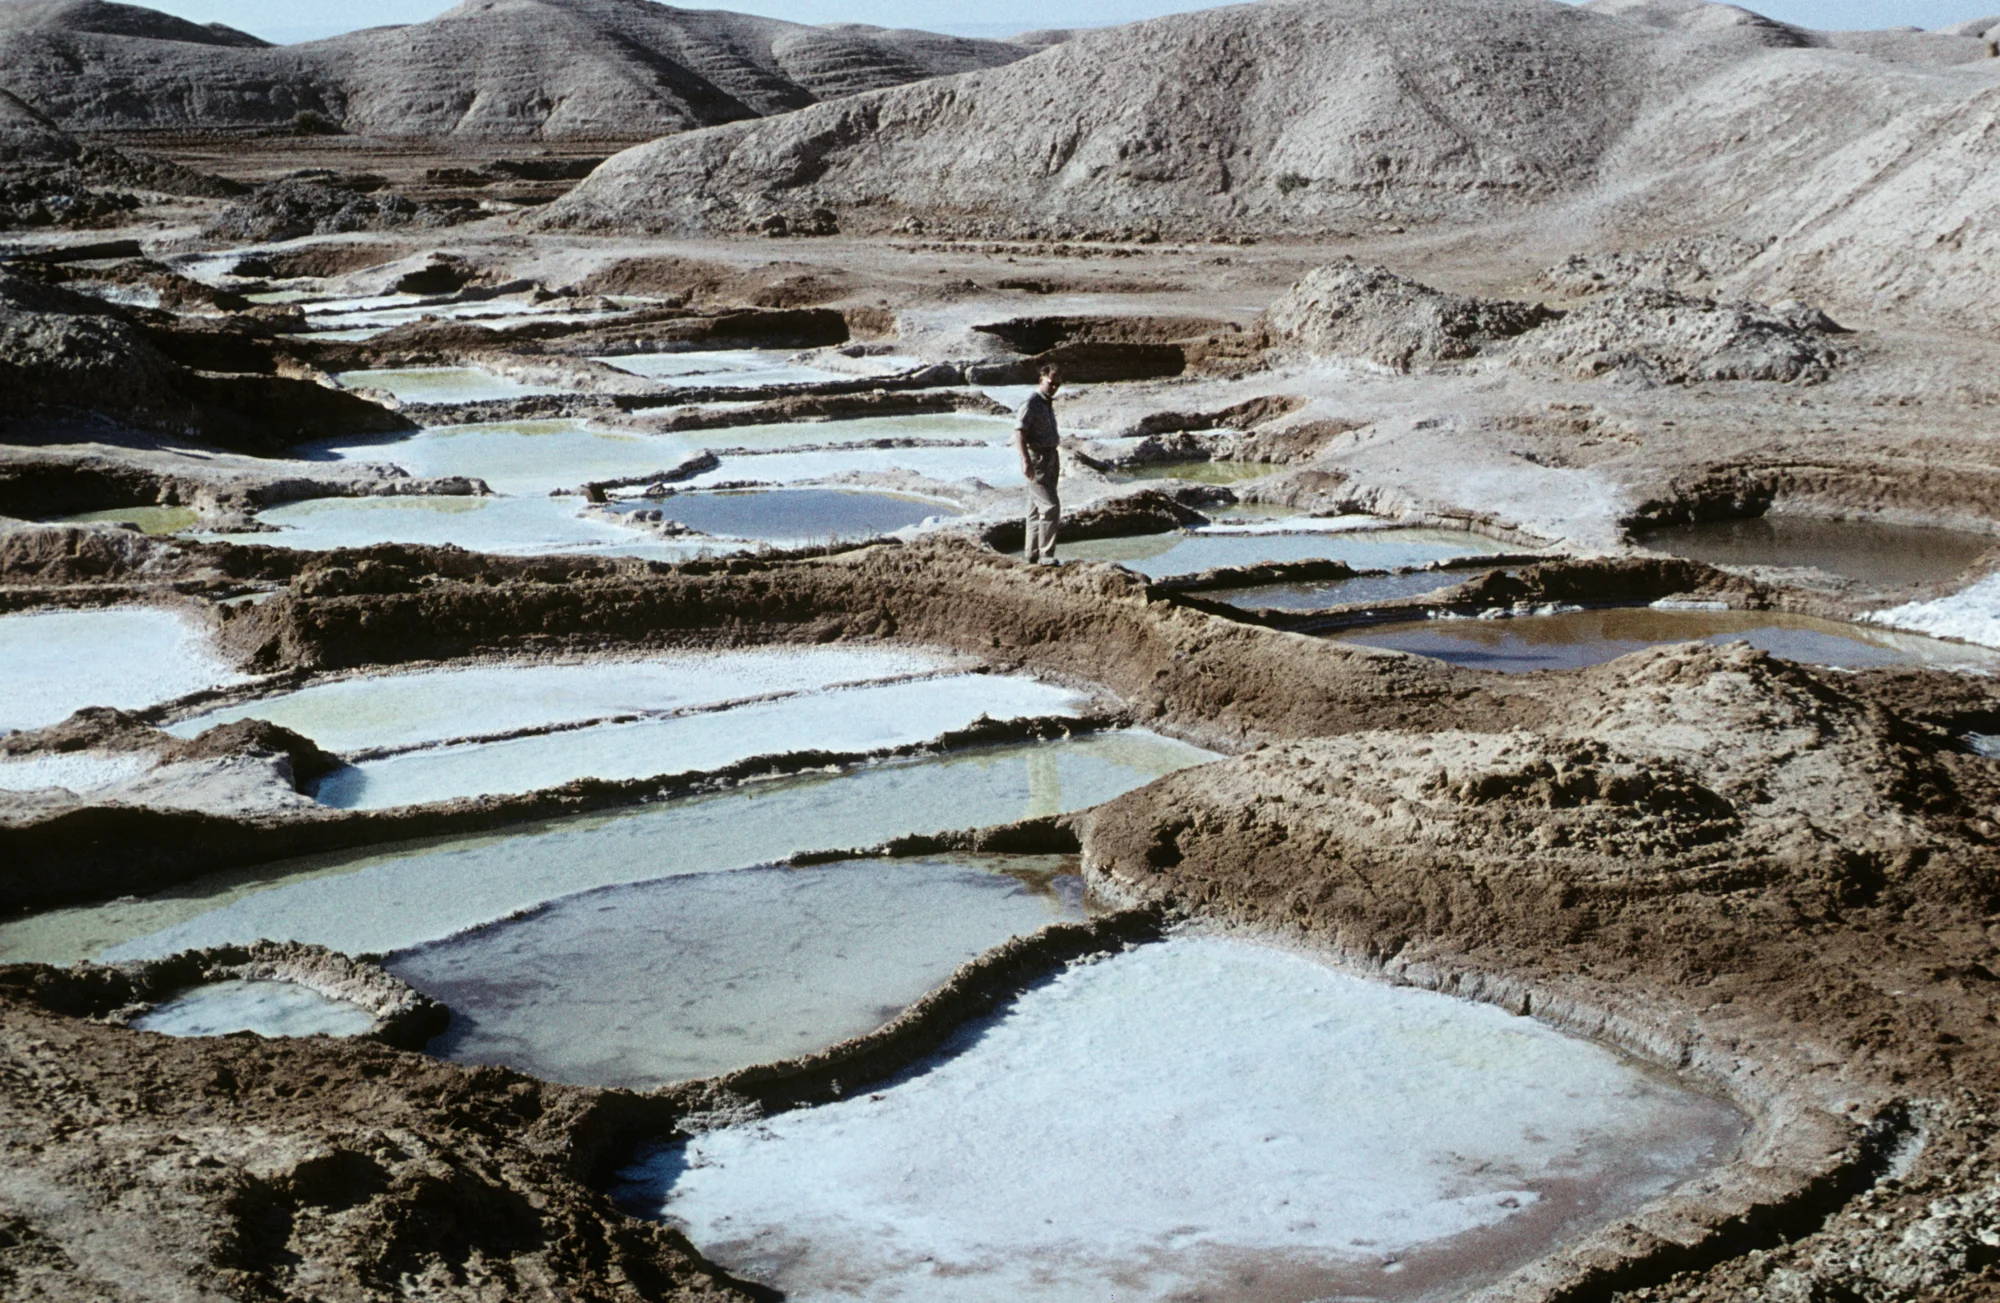 Salt flats for salt production west of Jabal Jabisa (Jabisa mountain)